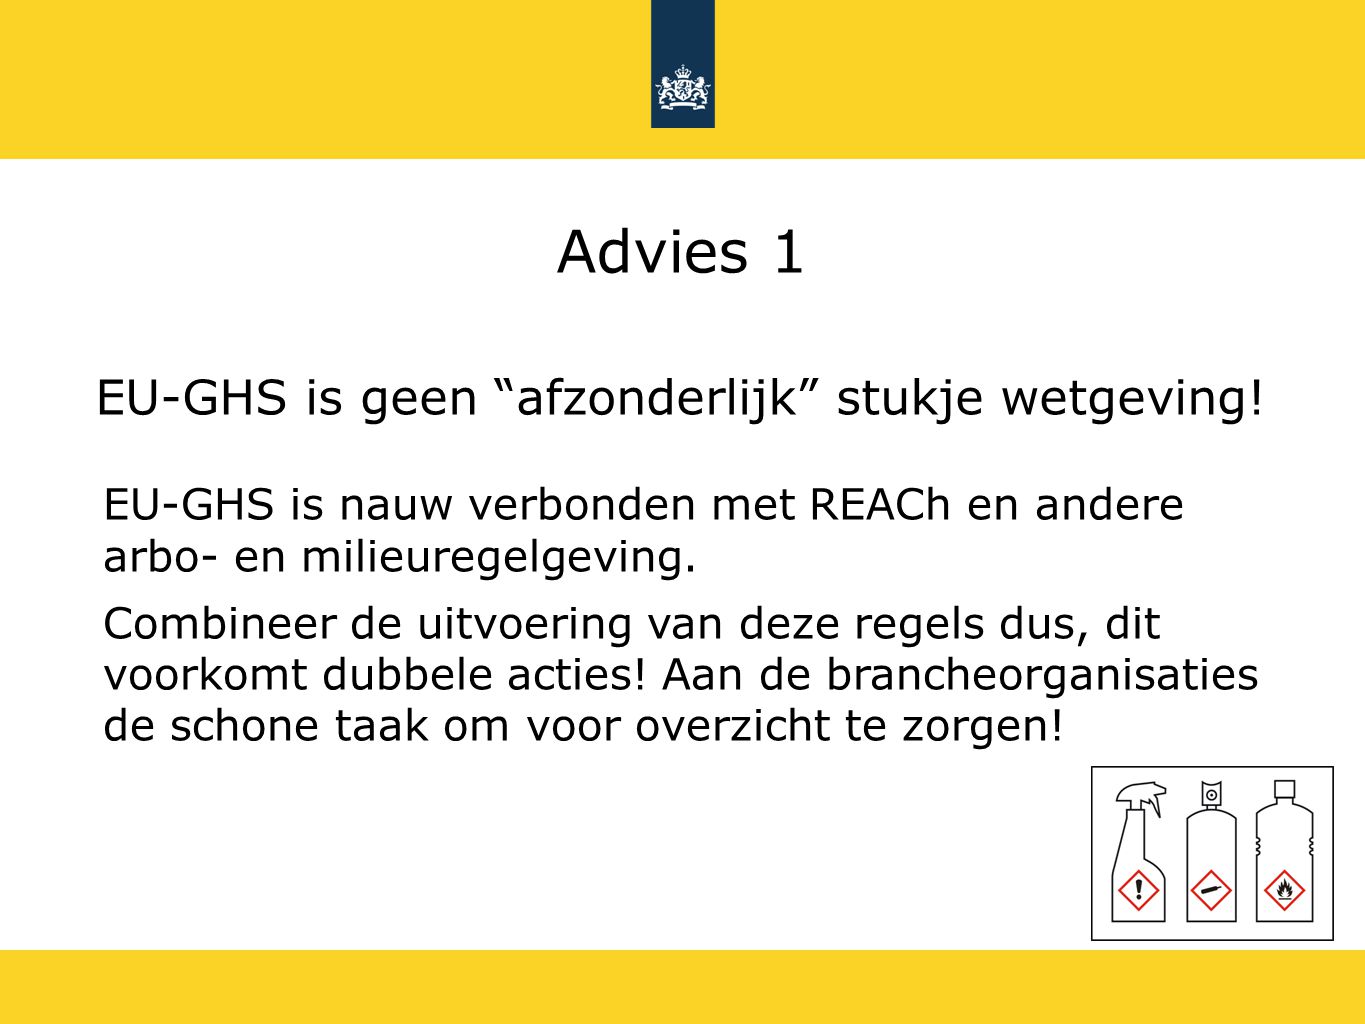 Advies 1 EU-GHS is geen afzonderlijk stukje wetgeving!